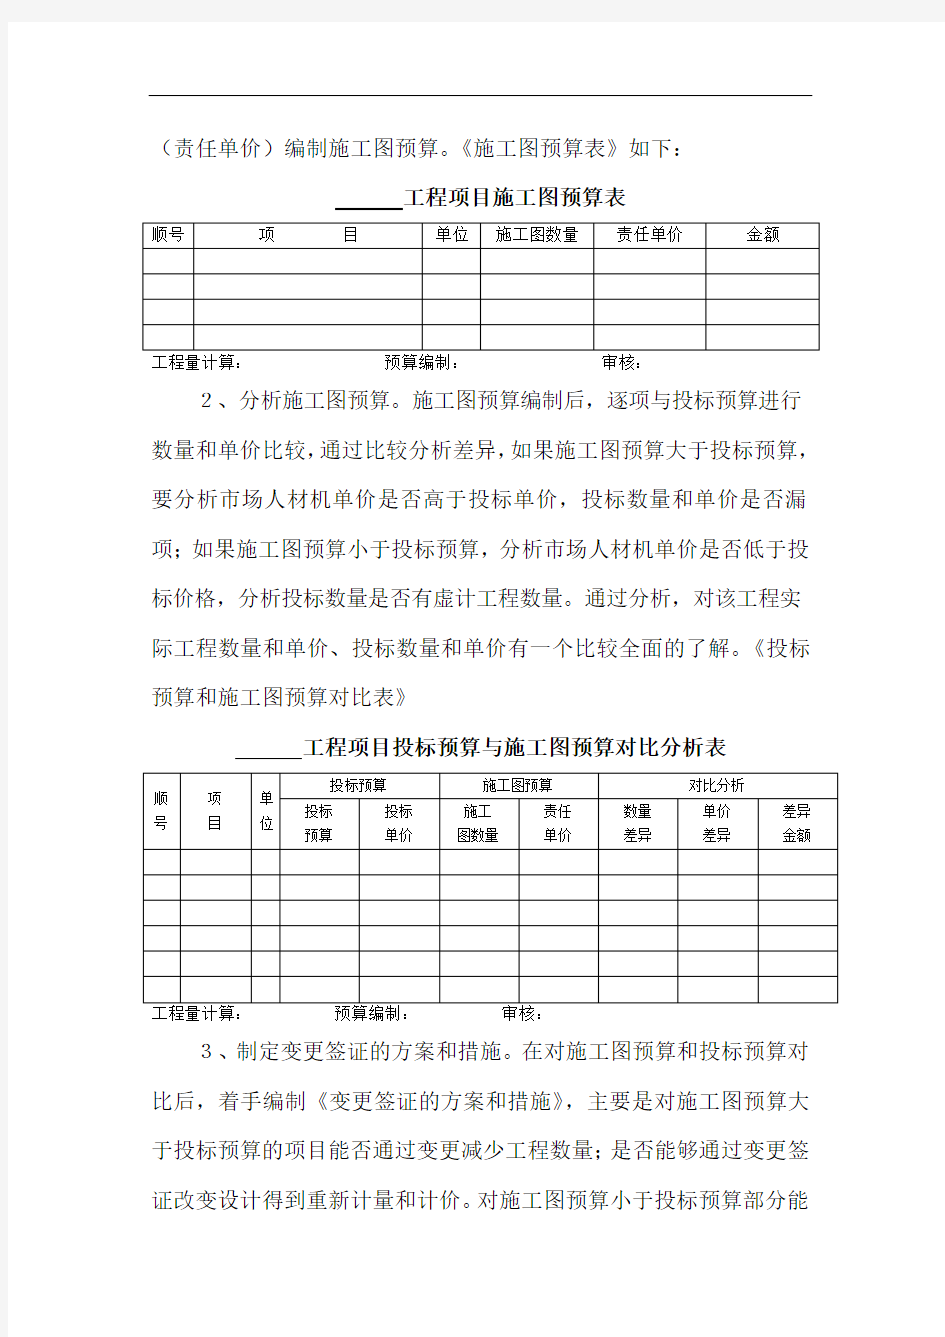 中国中铁建筑公司成本管理台帐与表格的编制方法